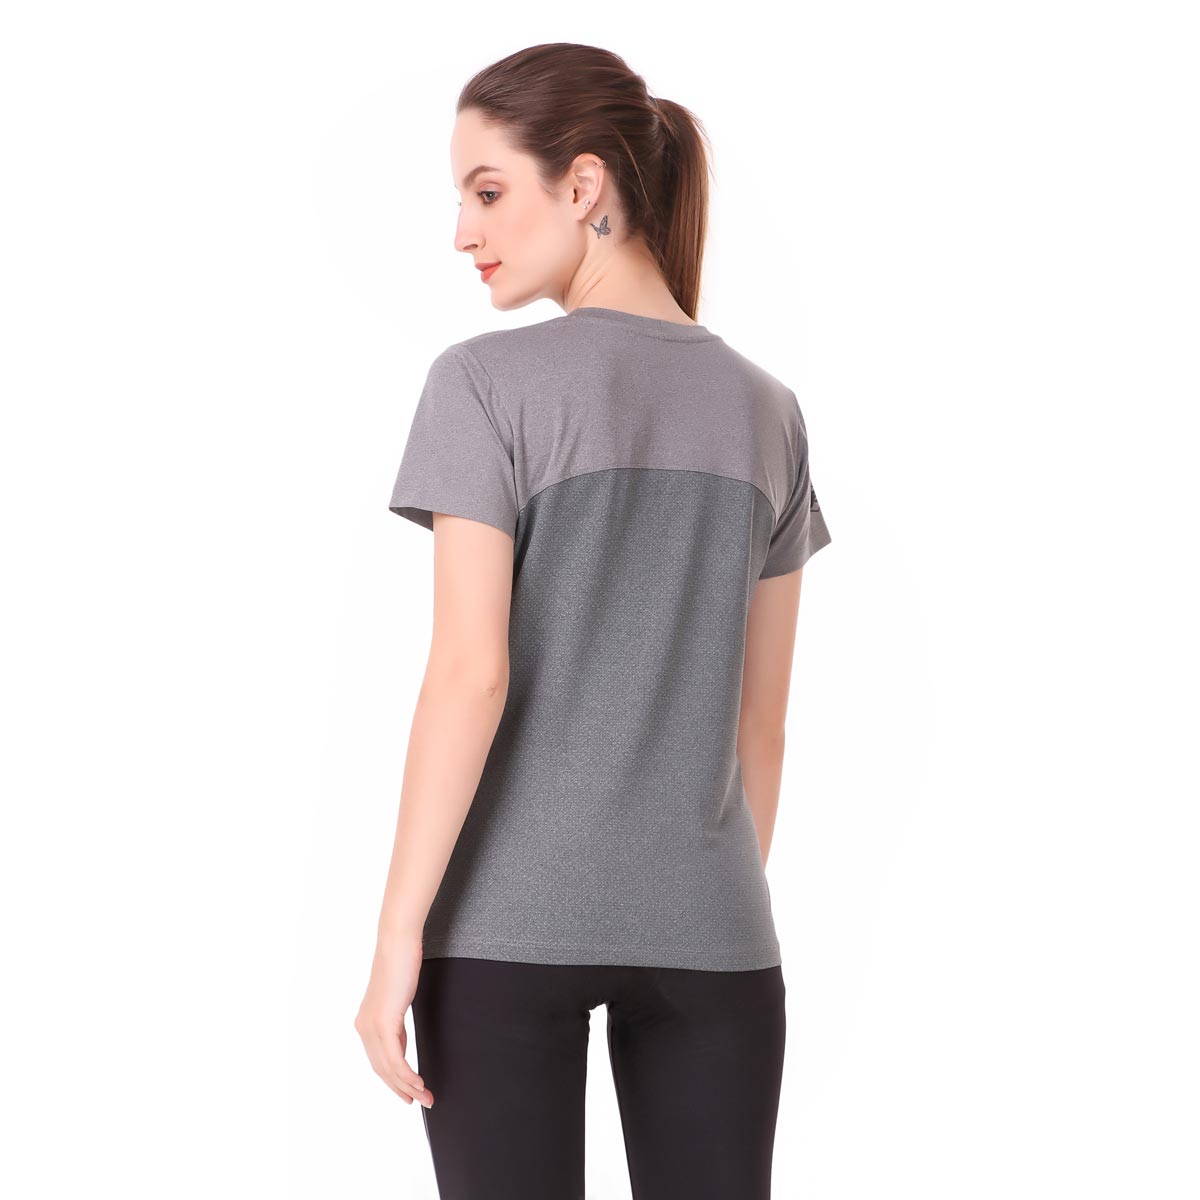 Performance Tshirt For Women WOYFY (Grey)